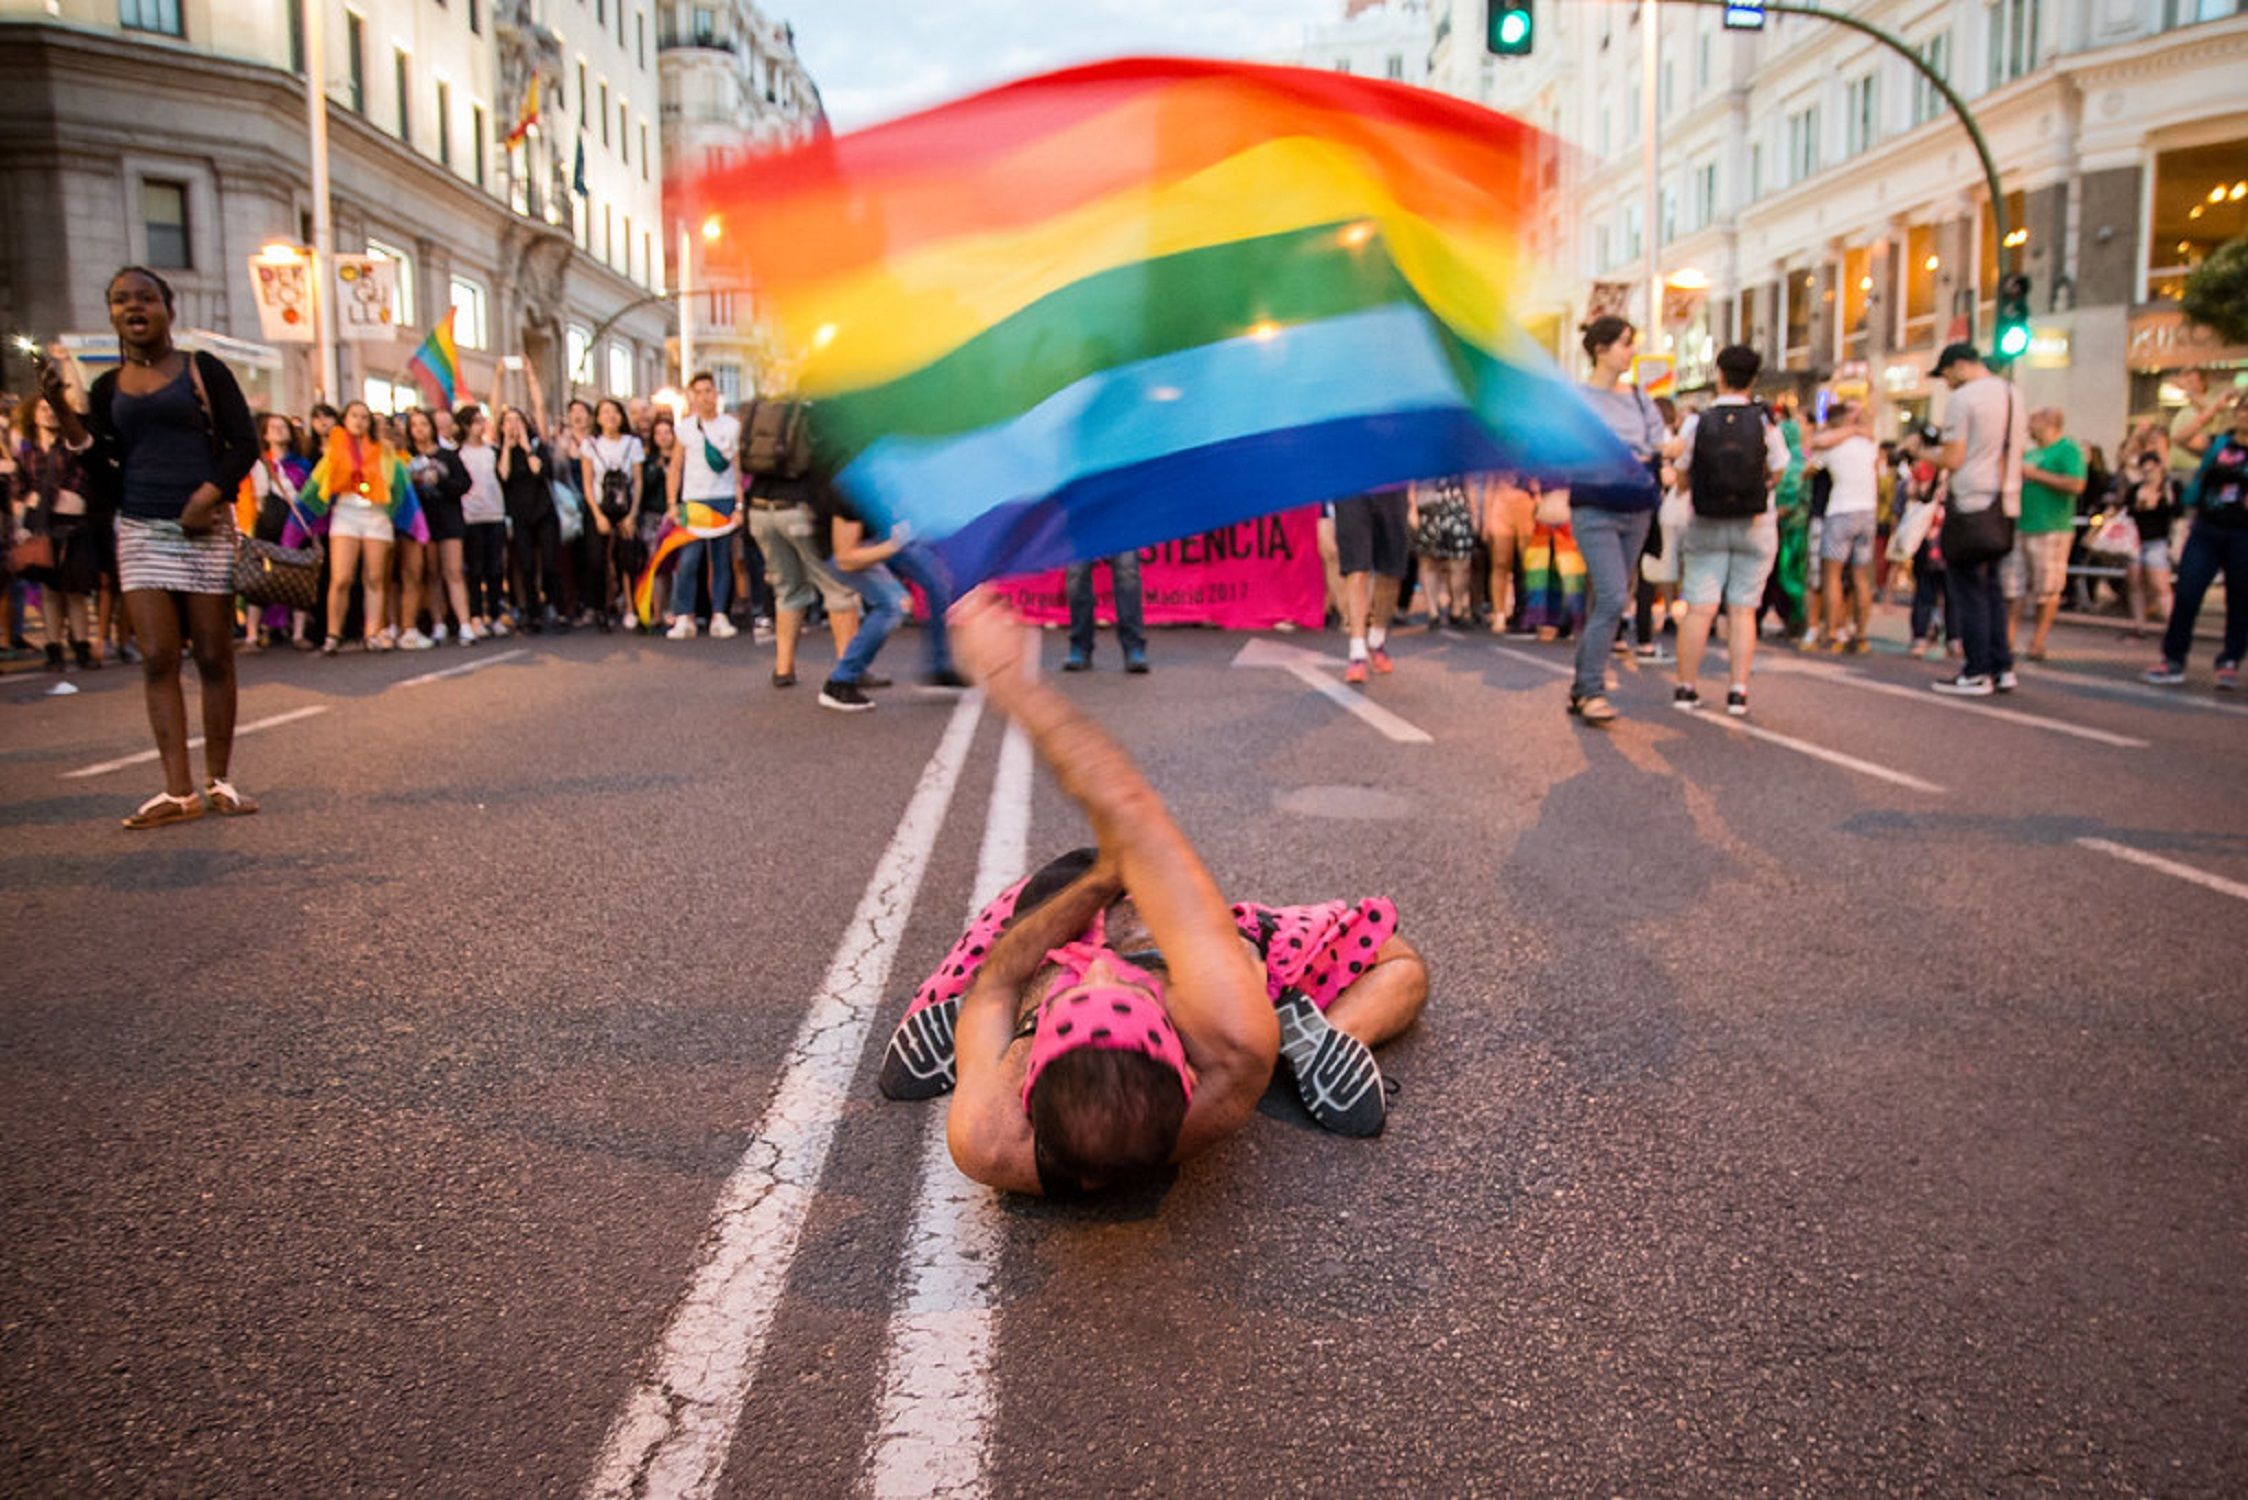 Orgullo gay / Flickr